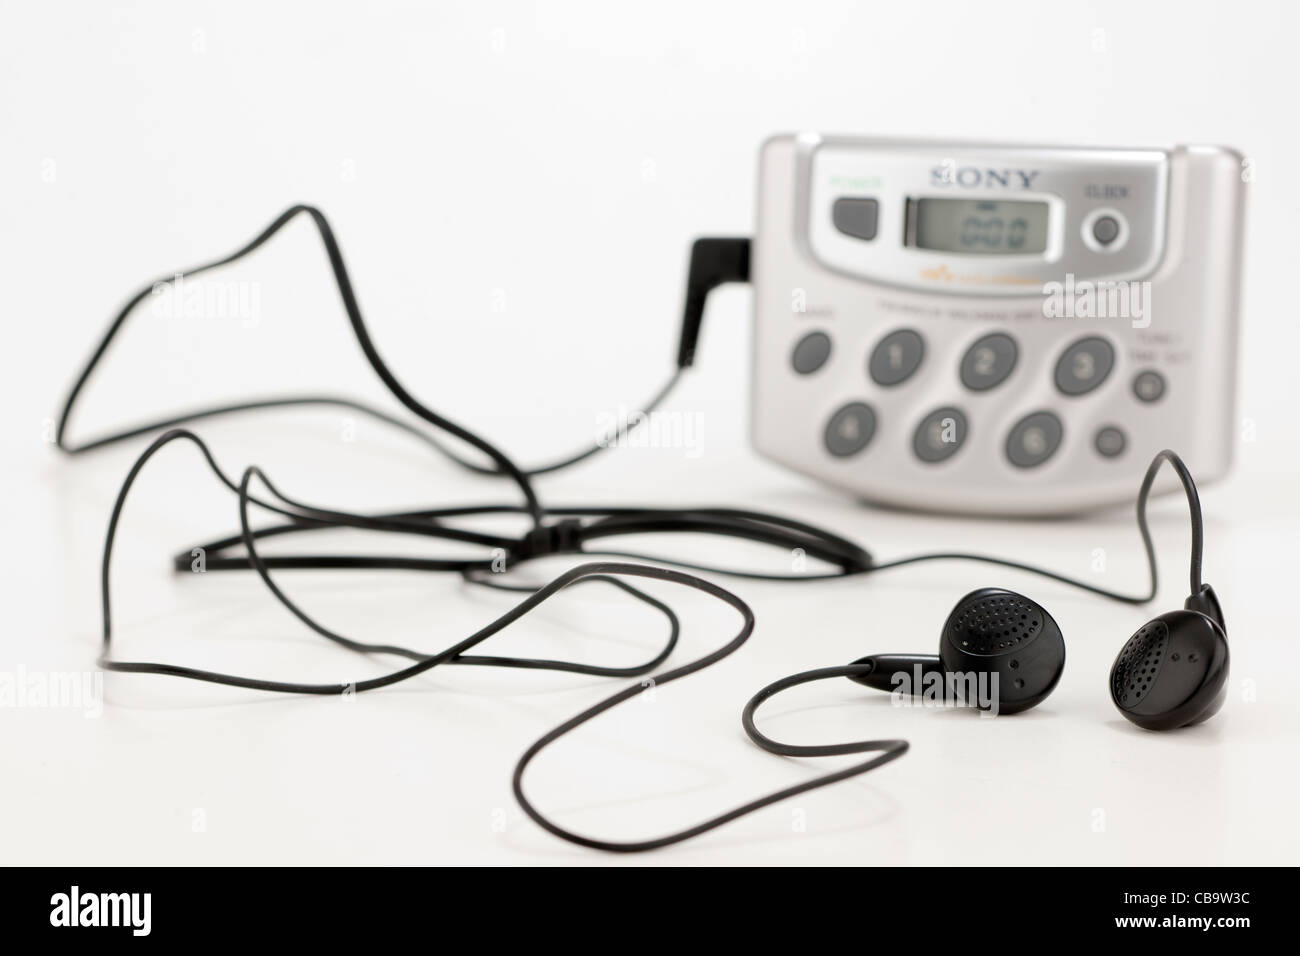 Personnel Sony Portable radio analogique et écouteurs Banque D'Images